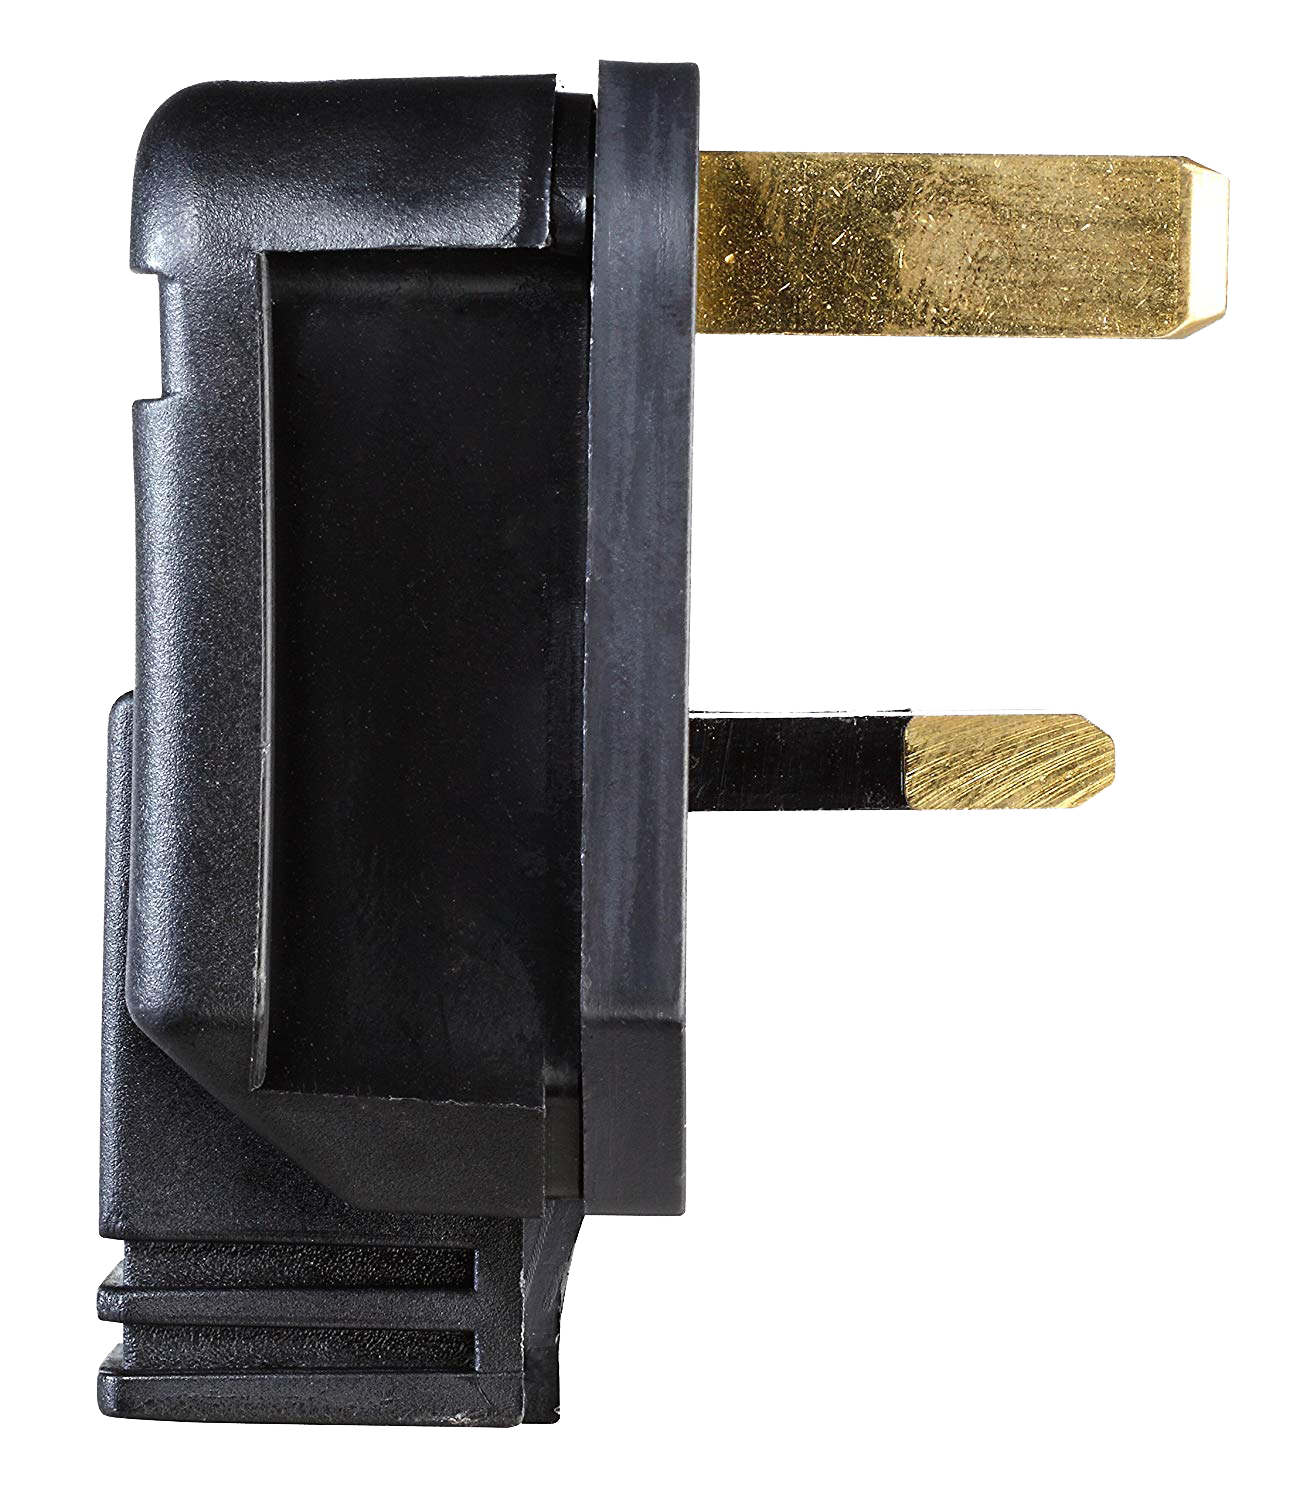 黑色專業工業高用電量插頭，DIY自由組裝13A有保險絲具有衝擊強度的3針工業級插頭工業級塑料堅固的電纜入口防護裝置耐用插頭，機電工程署認可英國BS1363安全標準（HDPT13B）